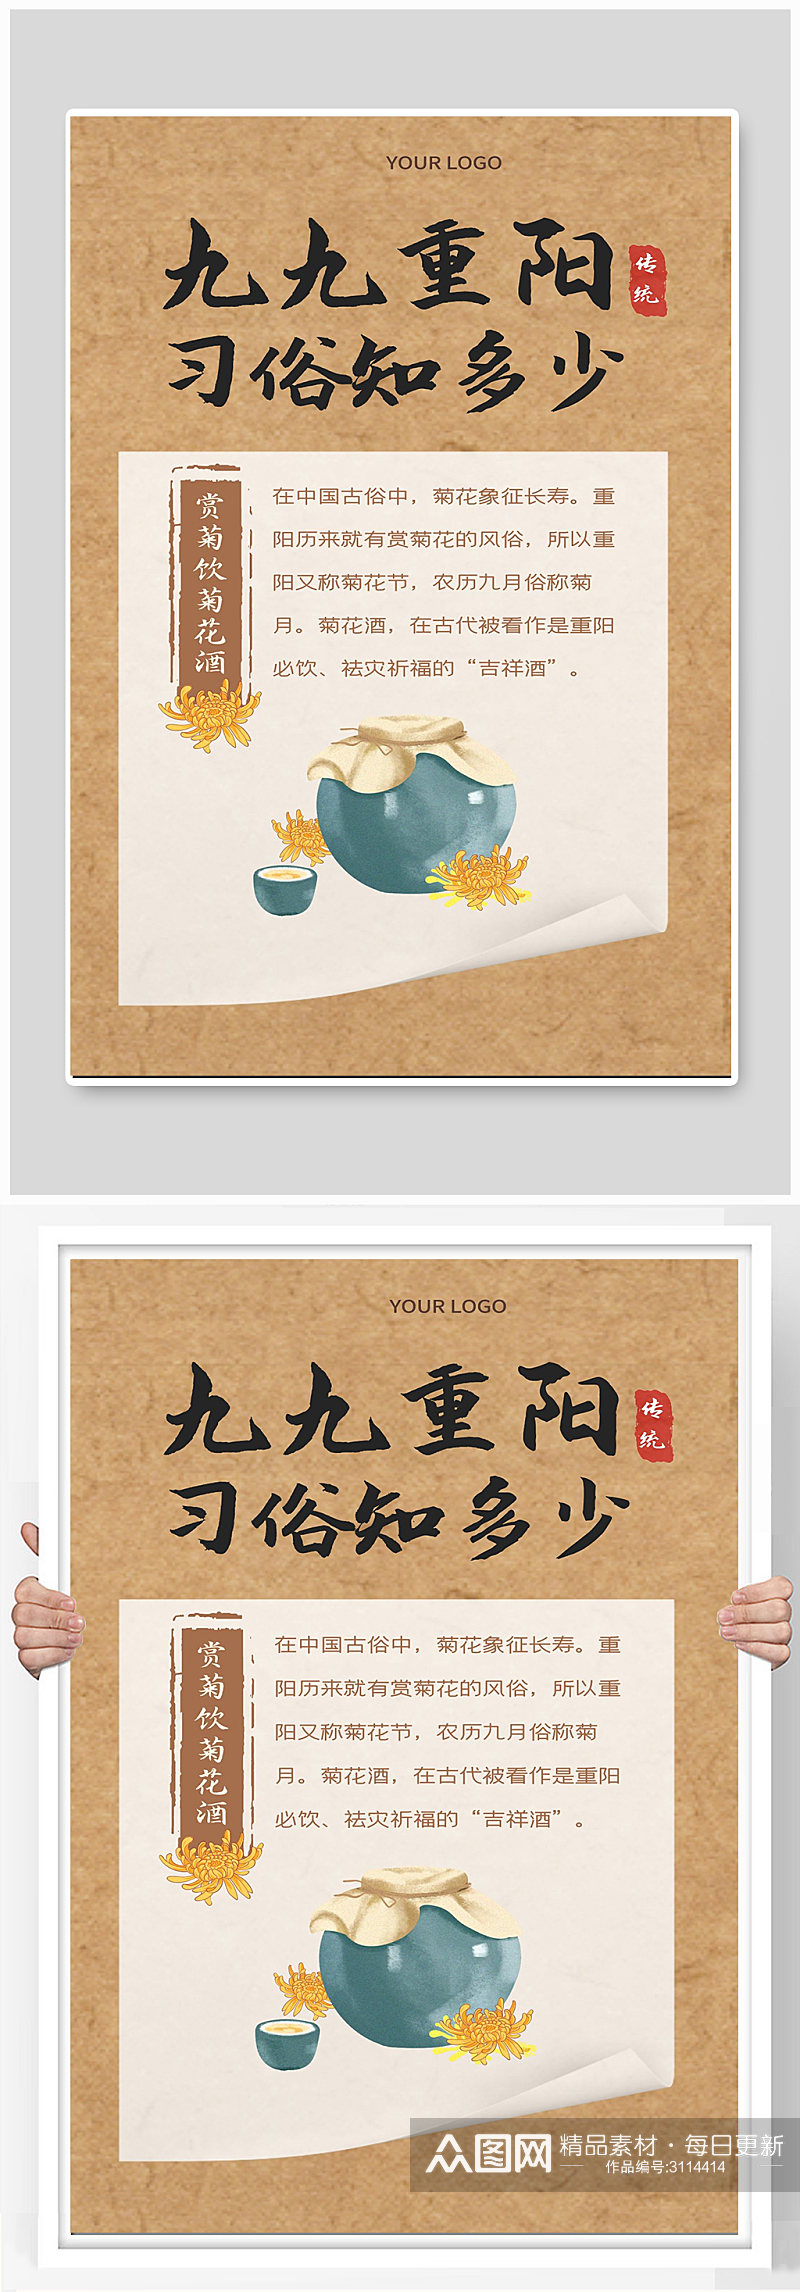 赏菊饮菊花酒宣传海报设计素材